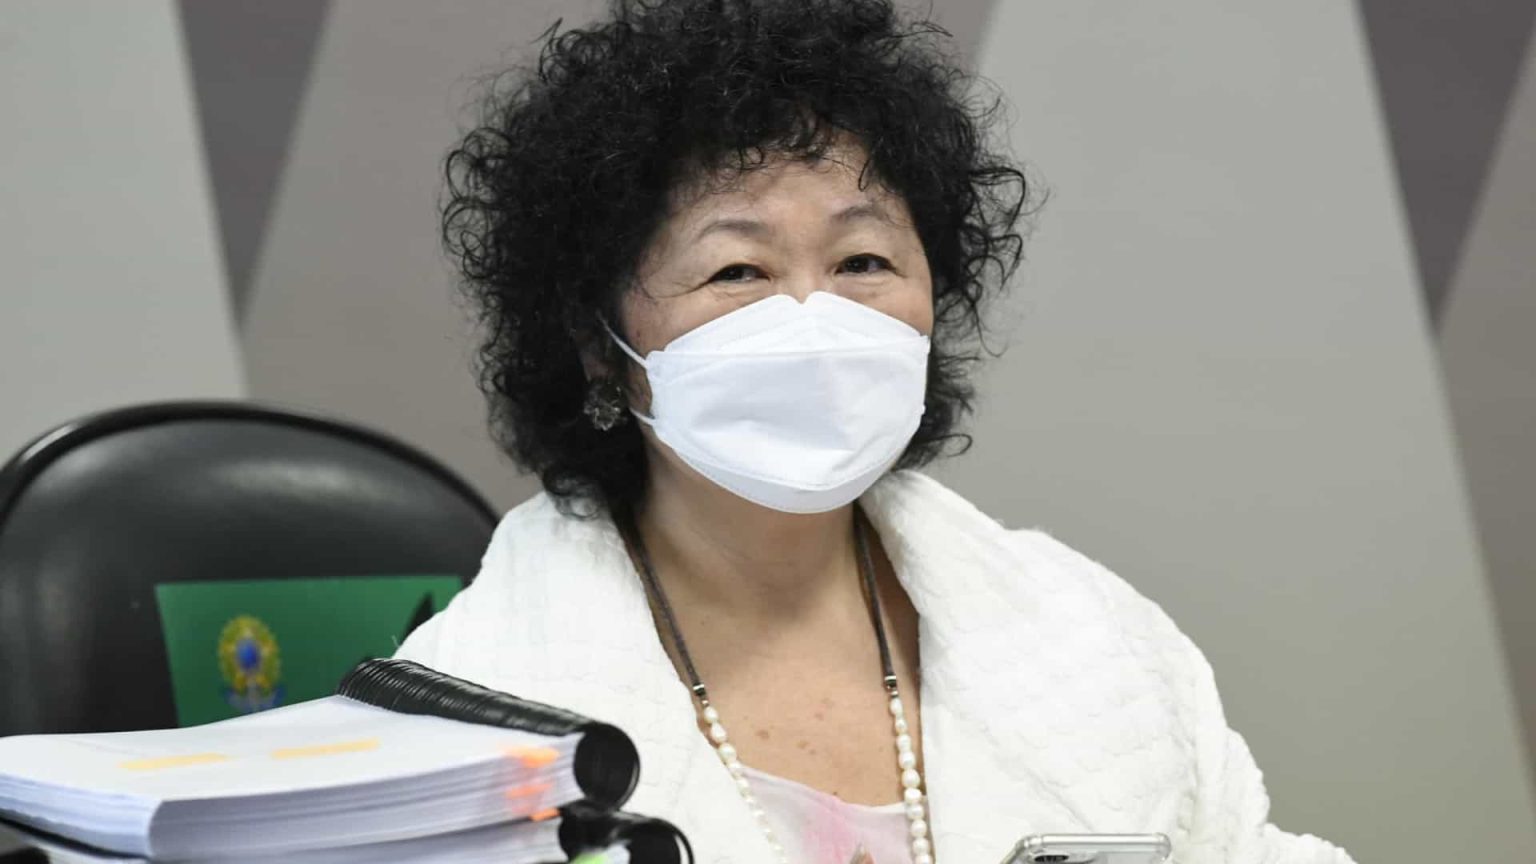 Médica pró-cloroquina Nise Yamaguchi se movimenta para disputar Senado em SP